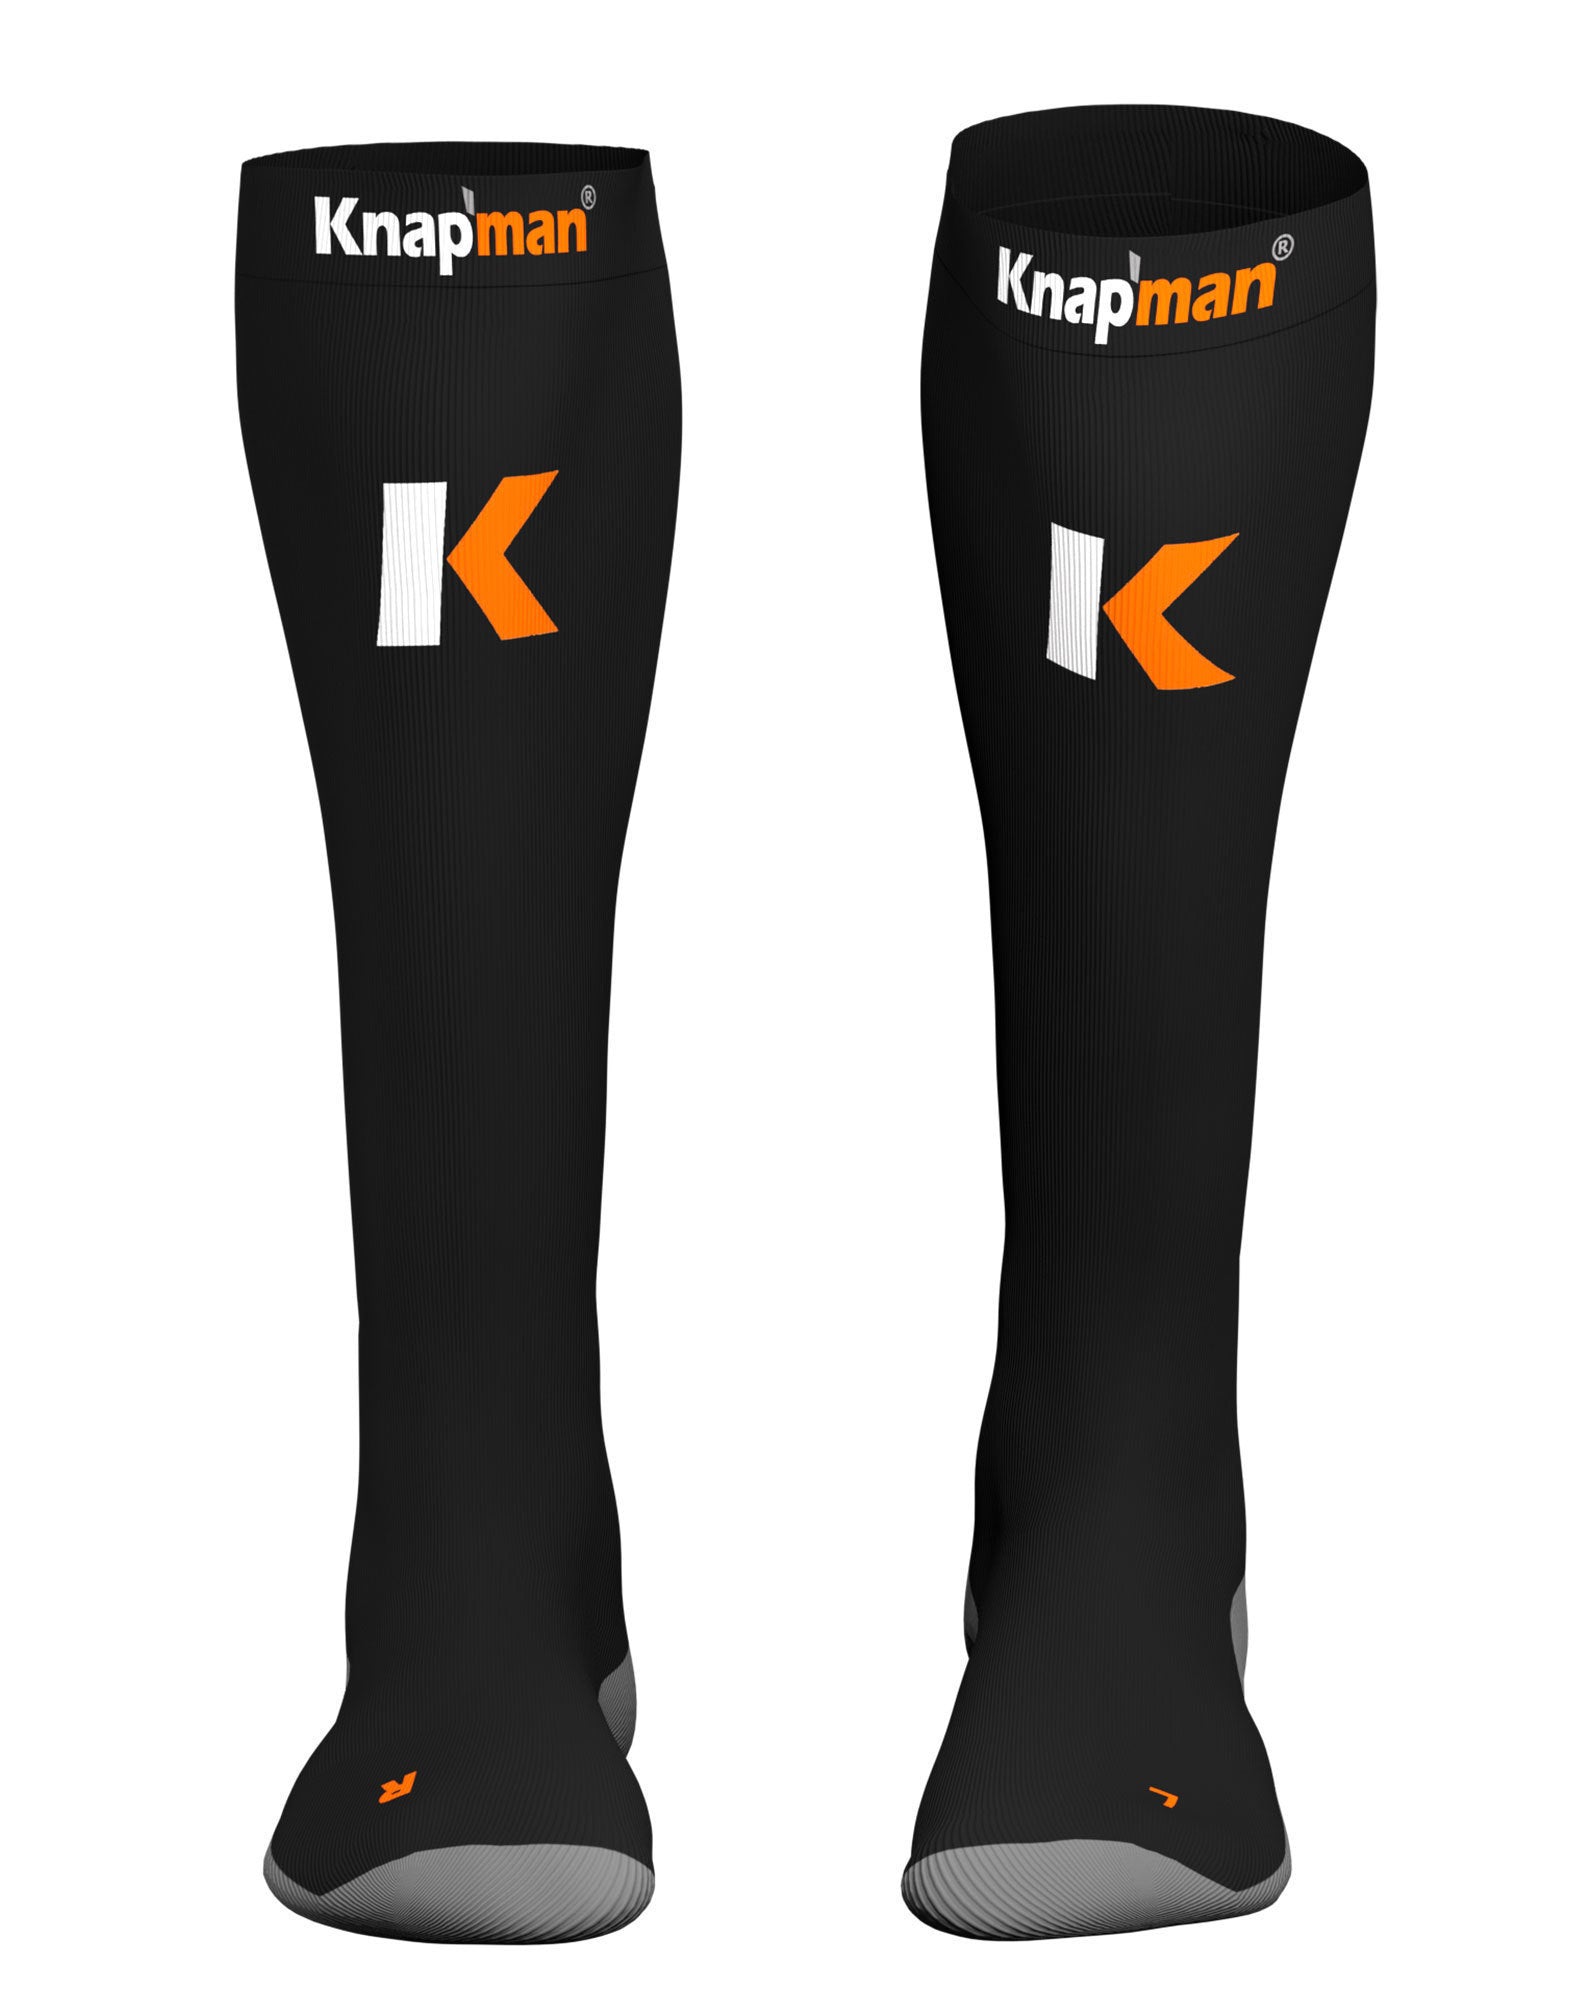 Chaussettes de compression et récupération Knap'man